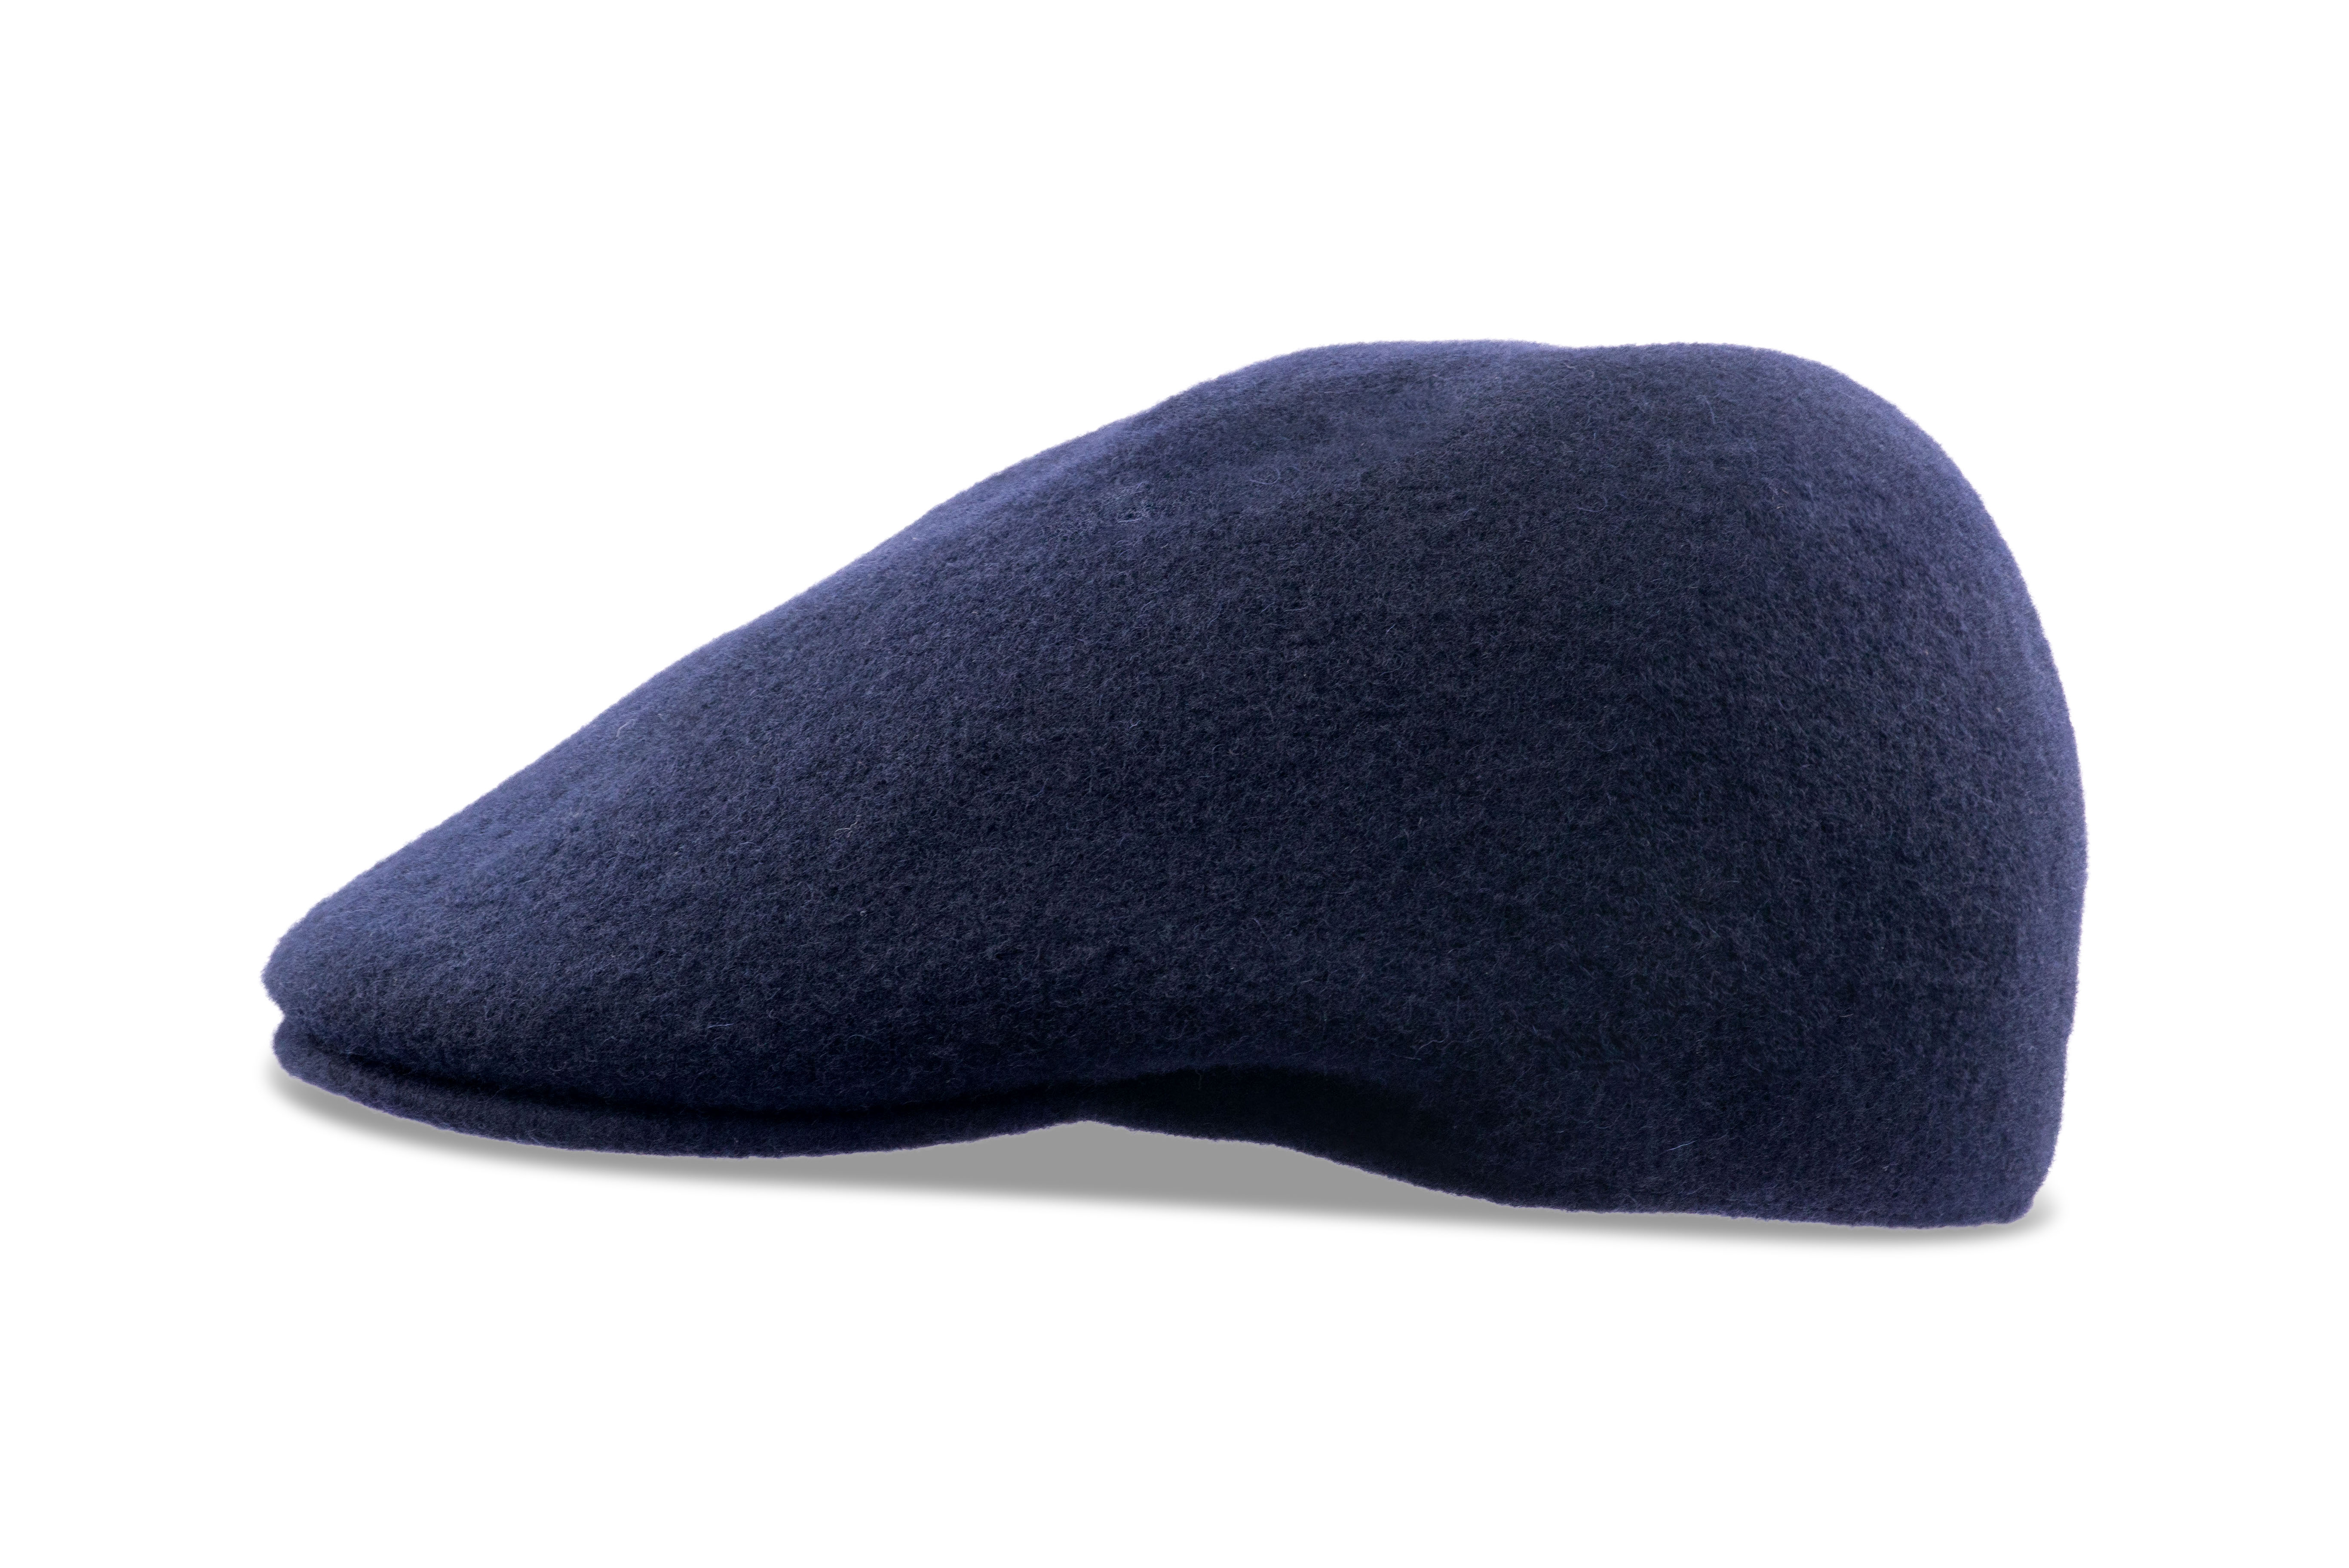 Kangol Seamless Wool 507 Felt Hat for Men and Women - Dark Blue - L